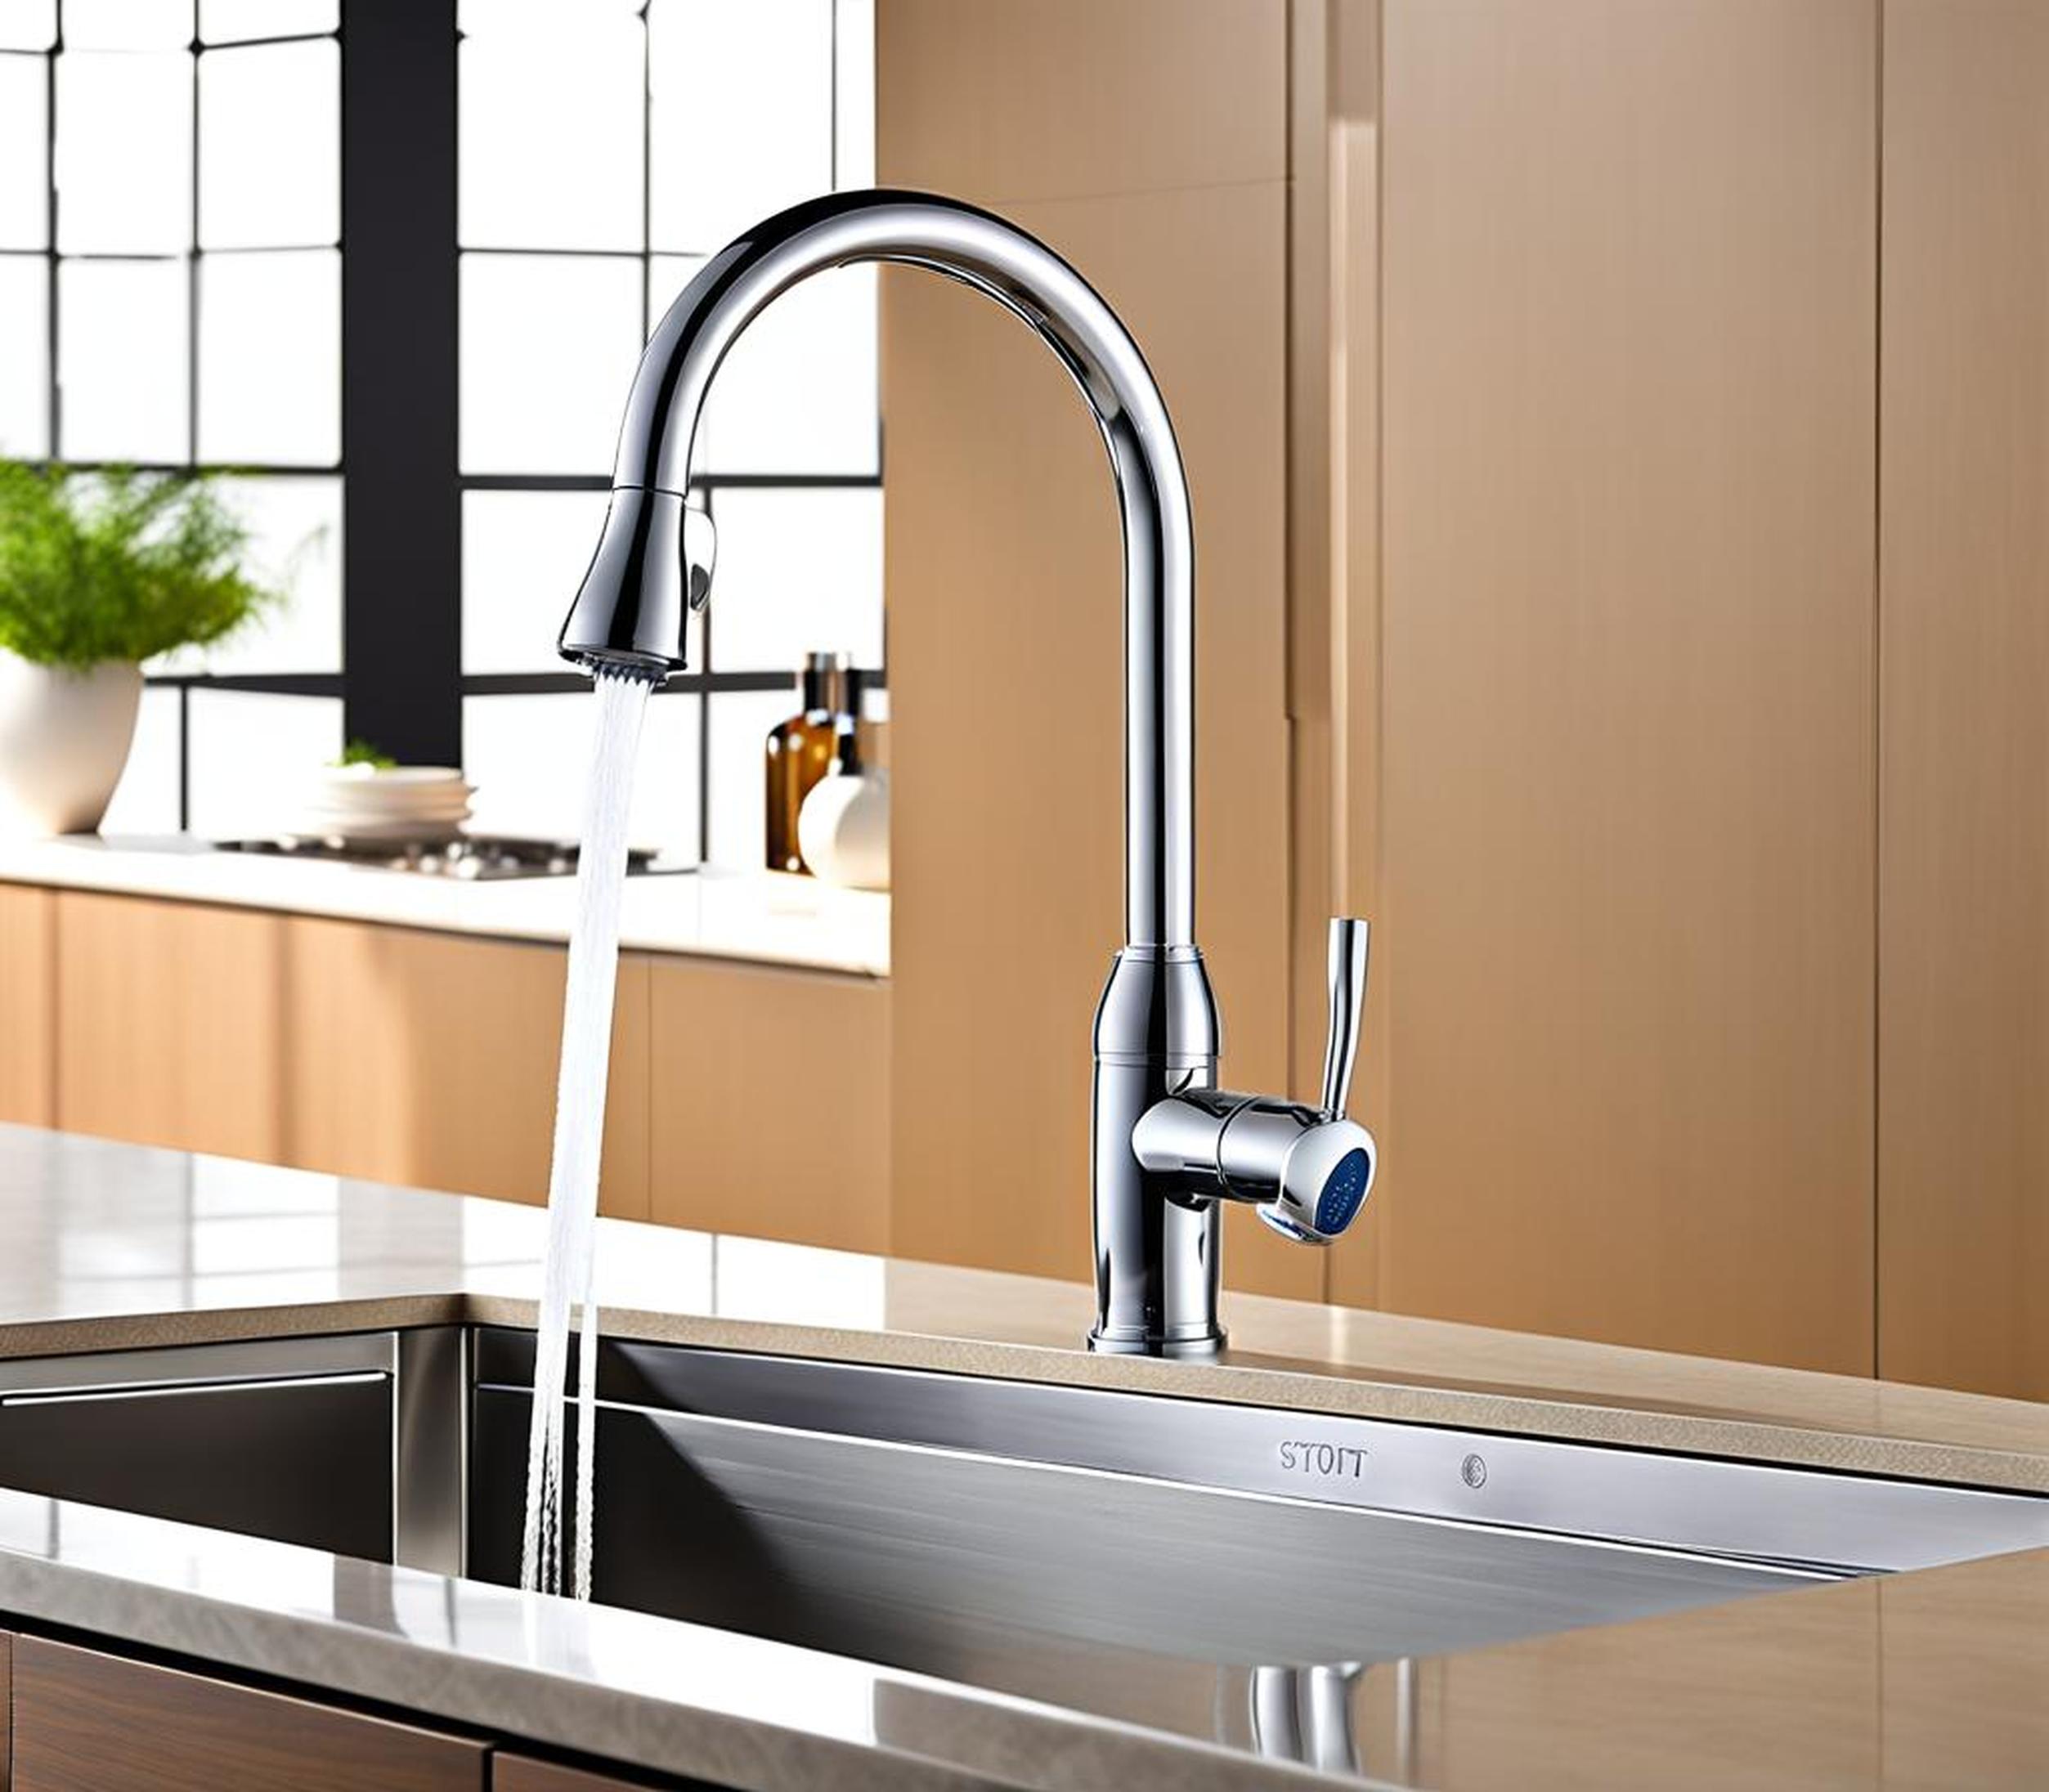 12 inch spout reach kitchen faucet